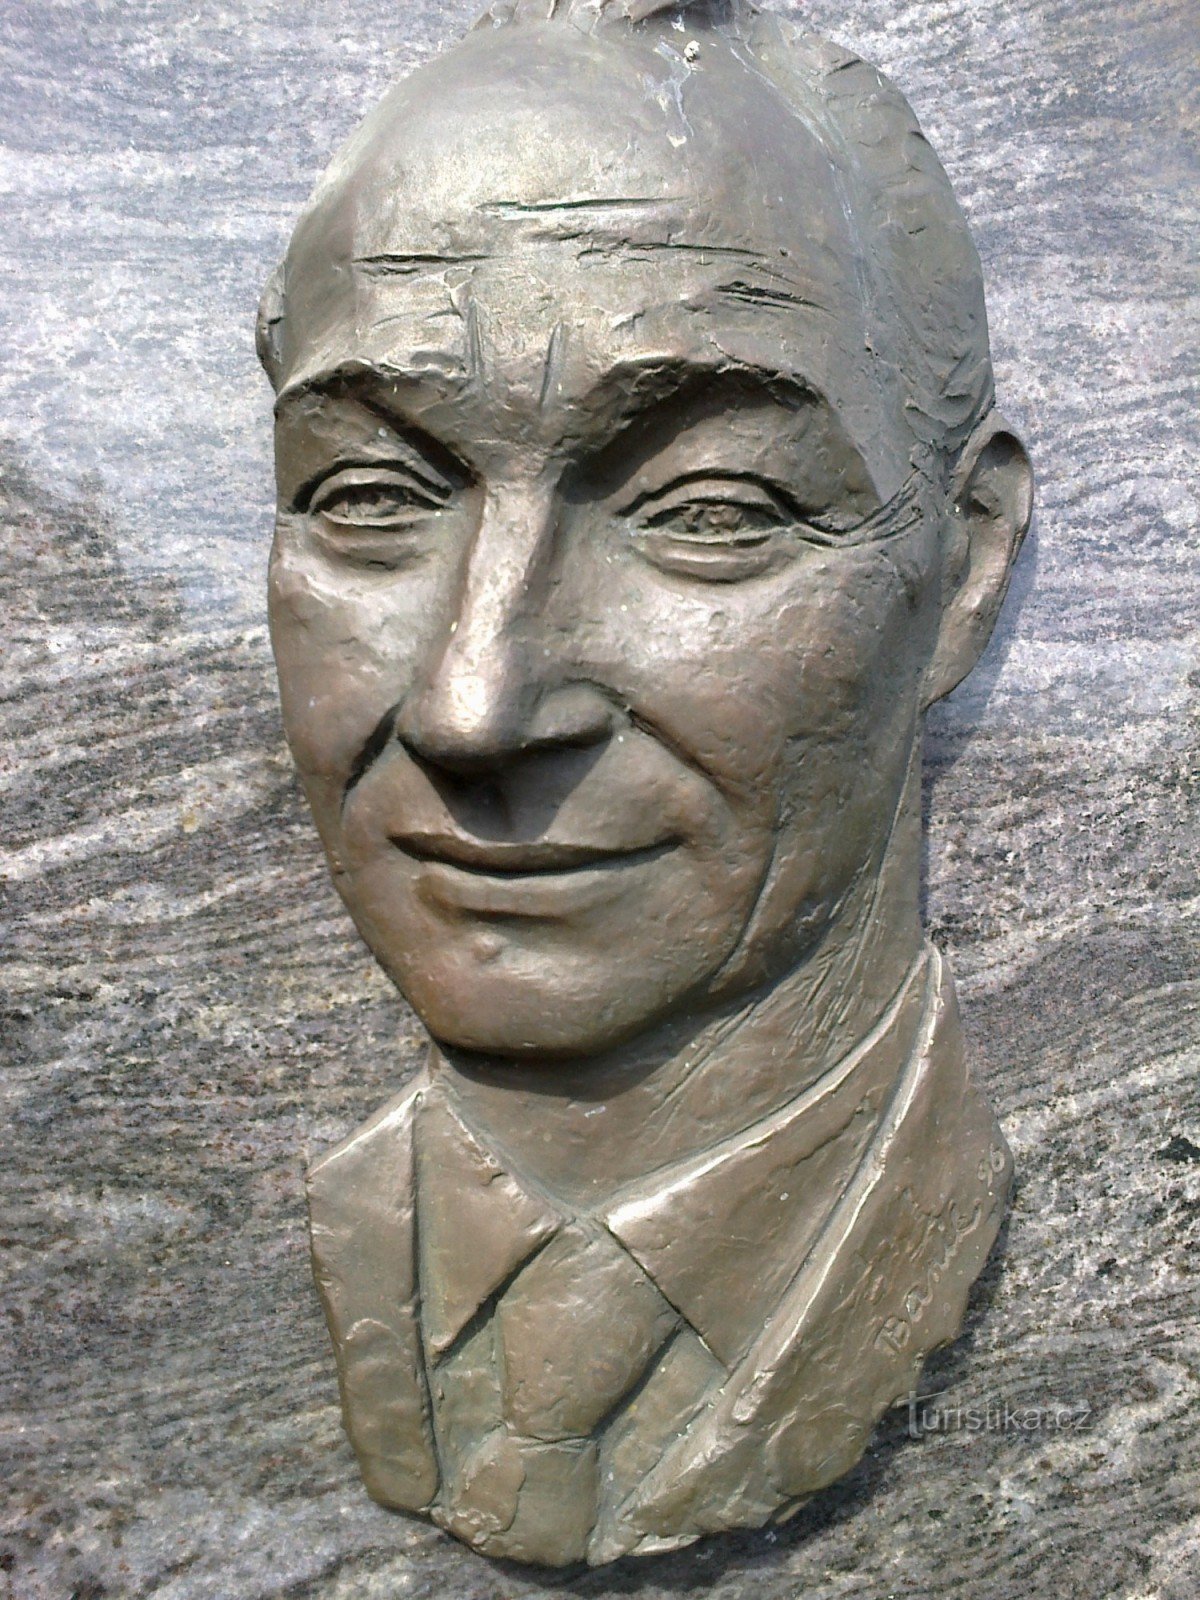 Alexander Dubček emlékműve Humpolka közelében.